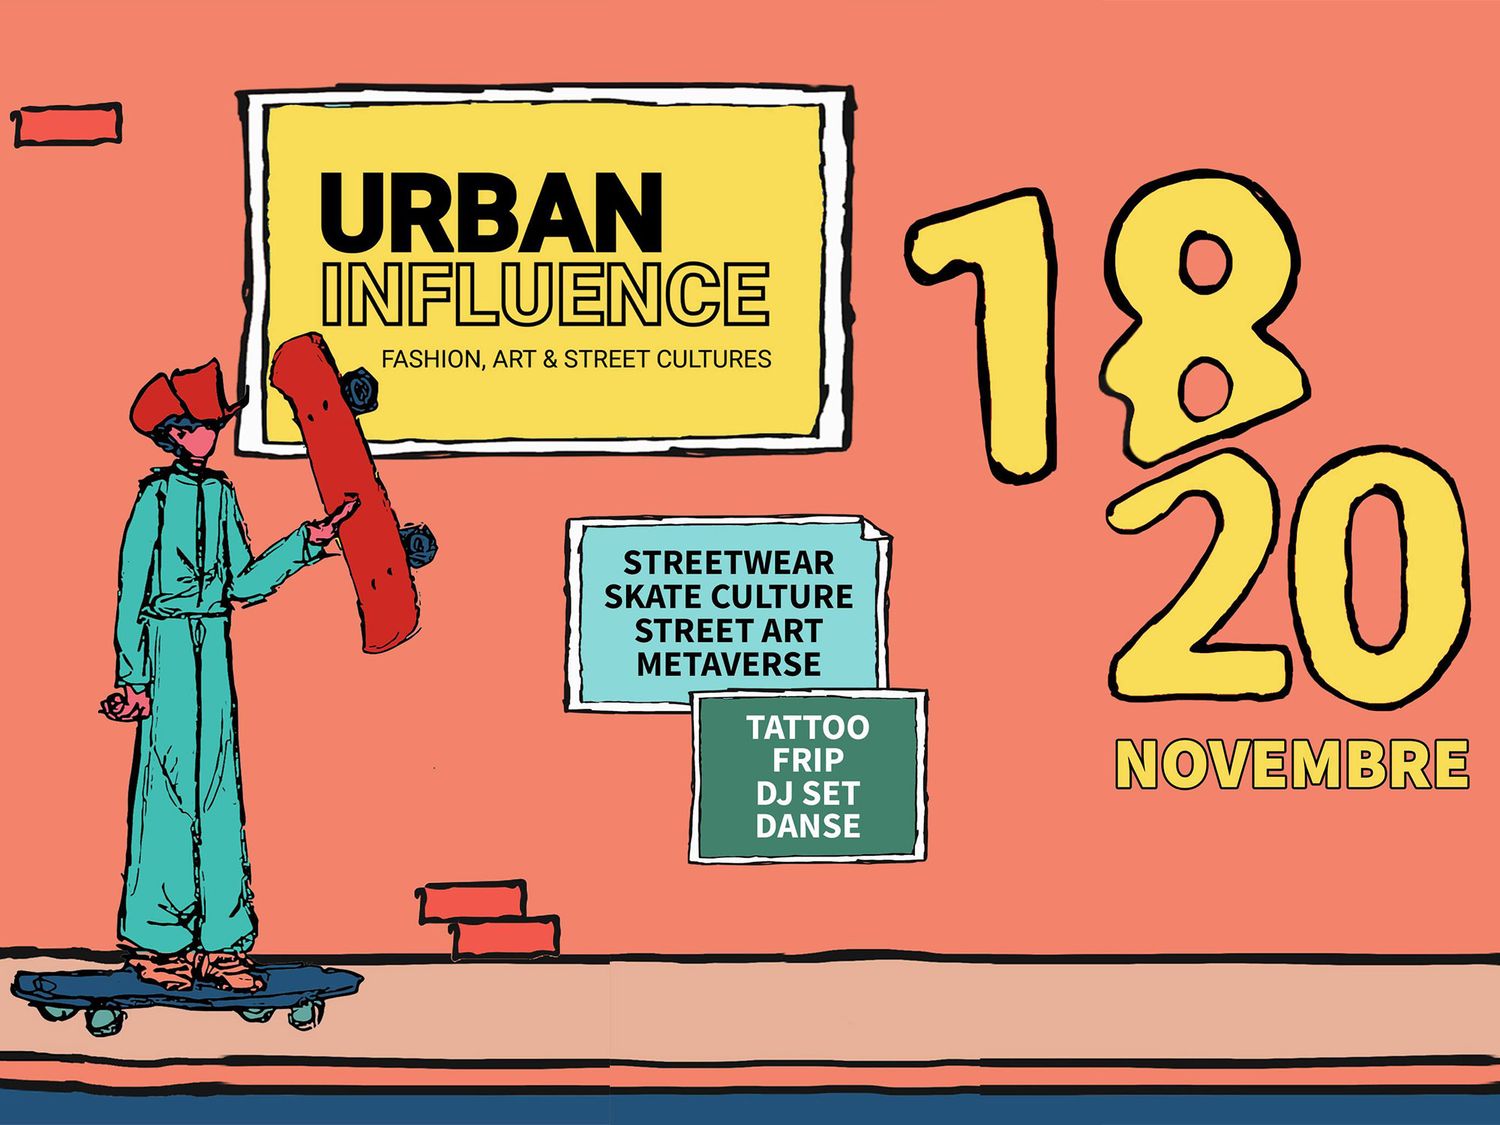 Pour cette première édition, Urban Influence va proposer un programme inédit et représentatif des cultures urbaines avec également de nombreuses surprises pendant 3 jours, du 18 au 20 novembre.